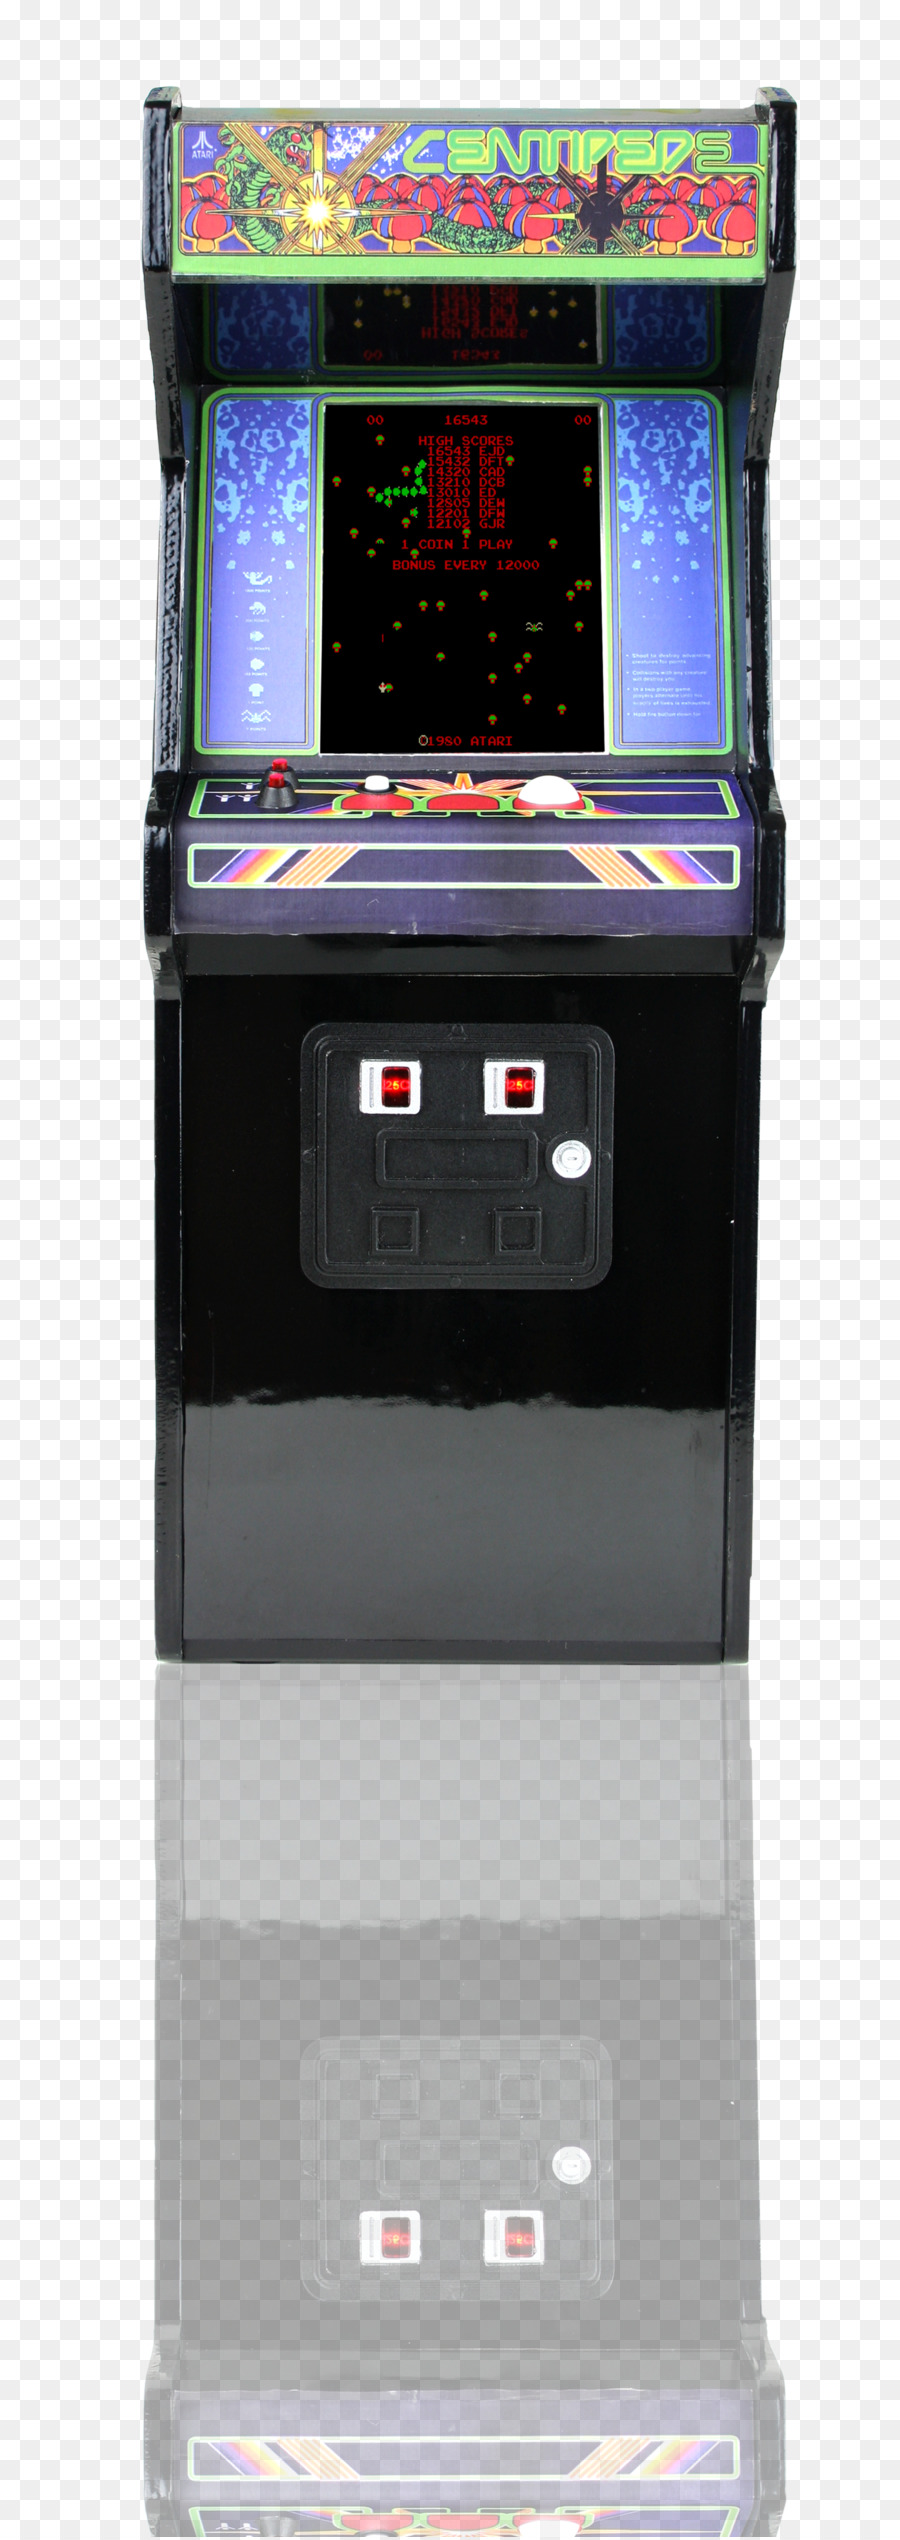 Centipede Arcade-Spiel Video-Arcade-Spiel-Kabinett-Retrogaming - Arcade